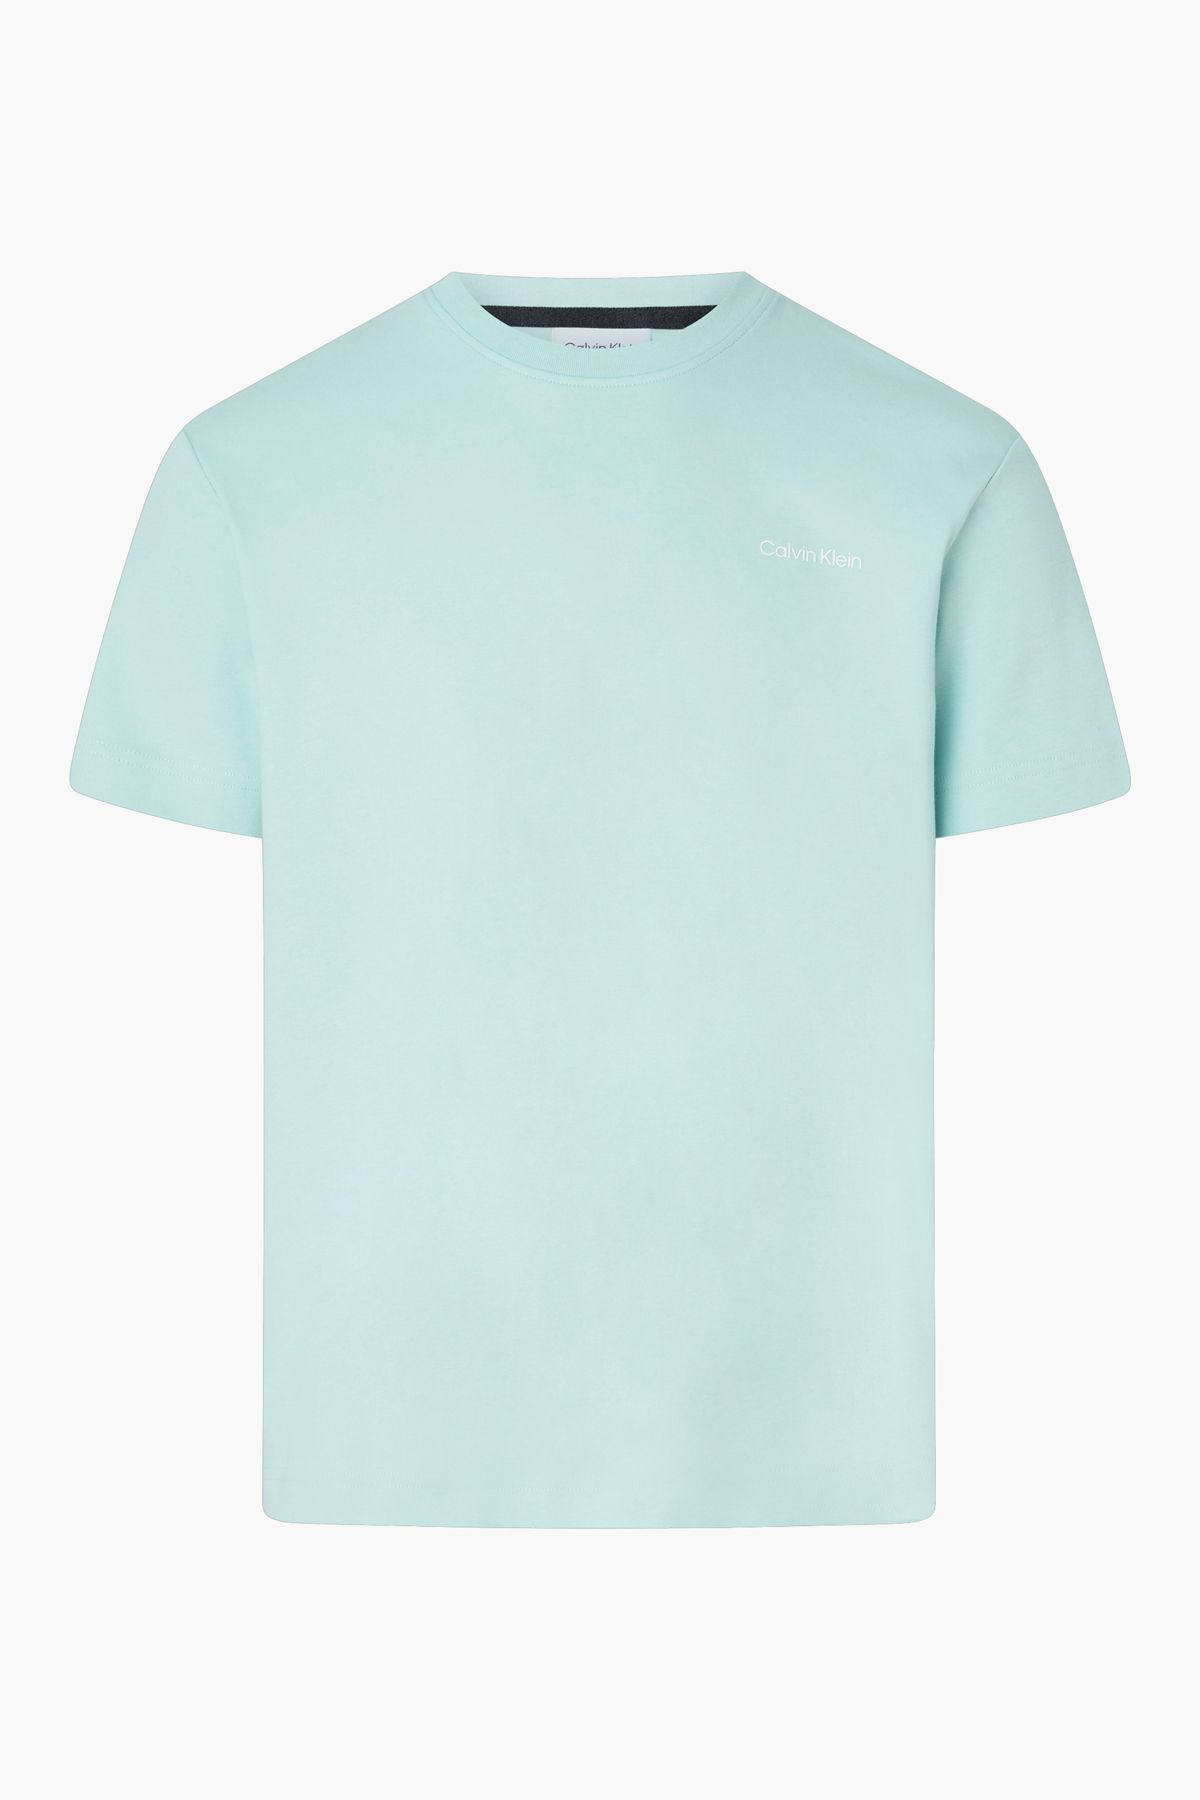 Calvin Klein Herren-Logo-Kurzarm-T-Shirt aus Baumwolle in Blau  K10k109900-c04 - Trendyol